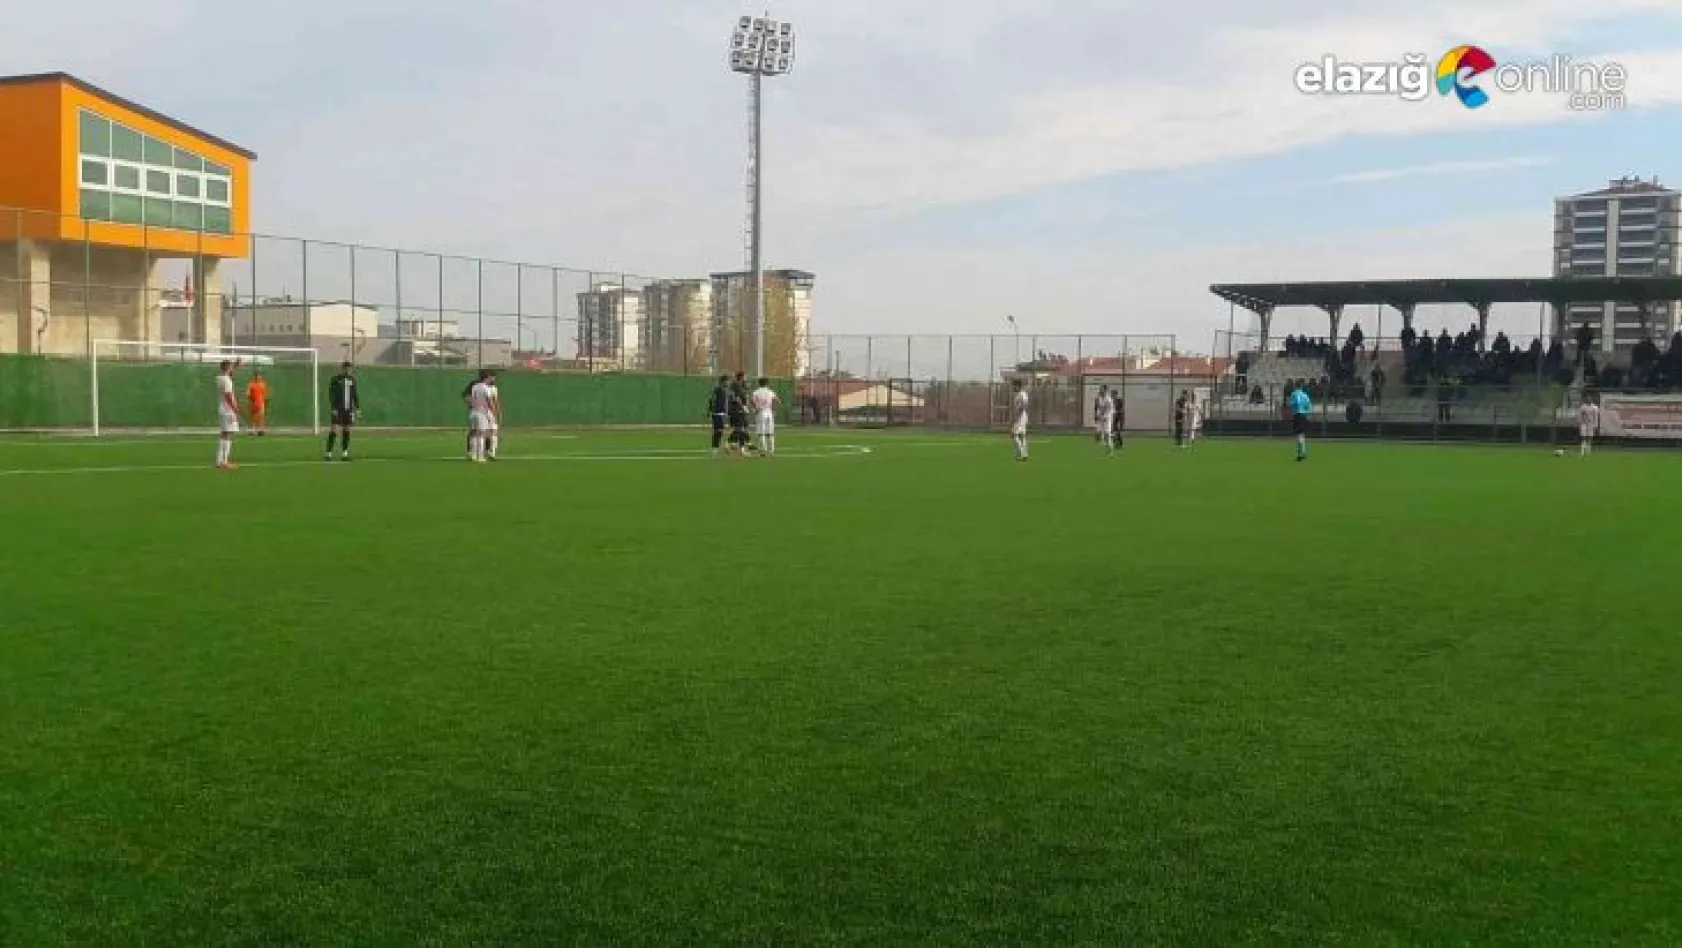 Elazığ Yolspor, evinde karşılaştığı 12 Bingölspor'la 1-1 berabere kaldı